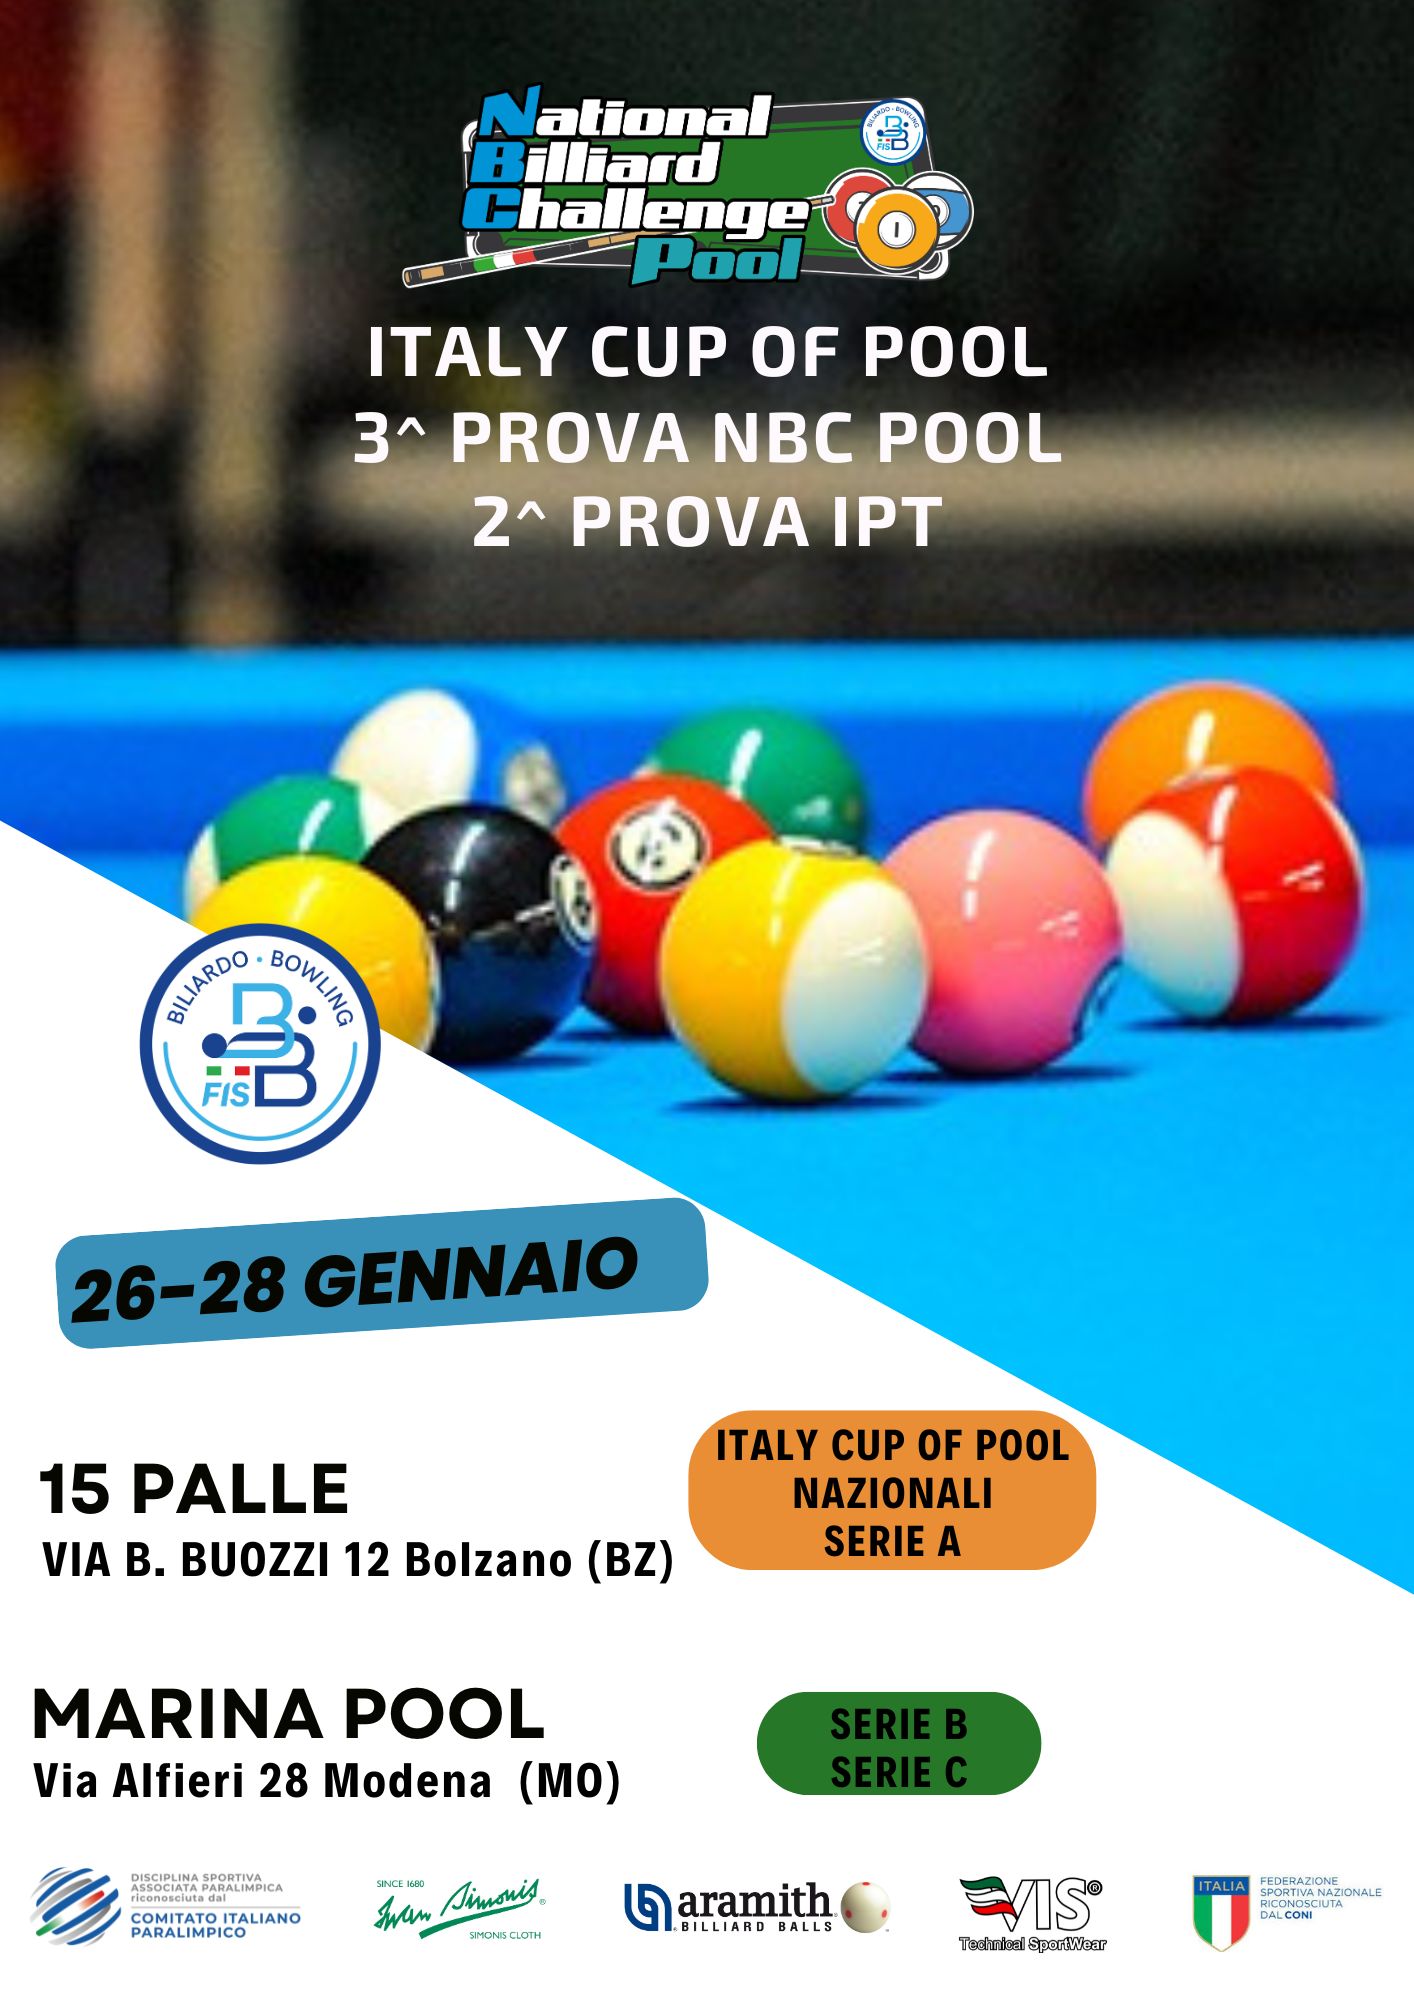 ITALY CUP OF POOL - 3^ PROVA NBC E 2^ PROVA IPT: ORARI DI GIOCO